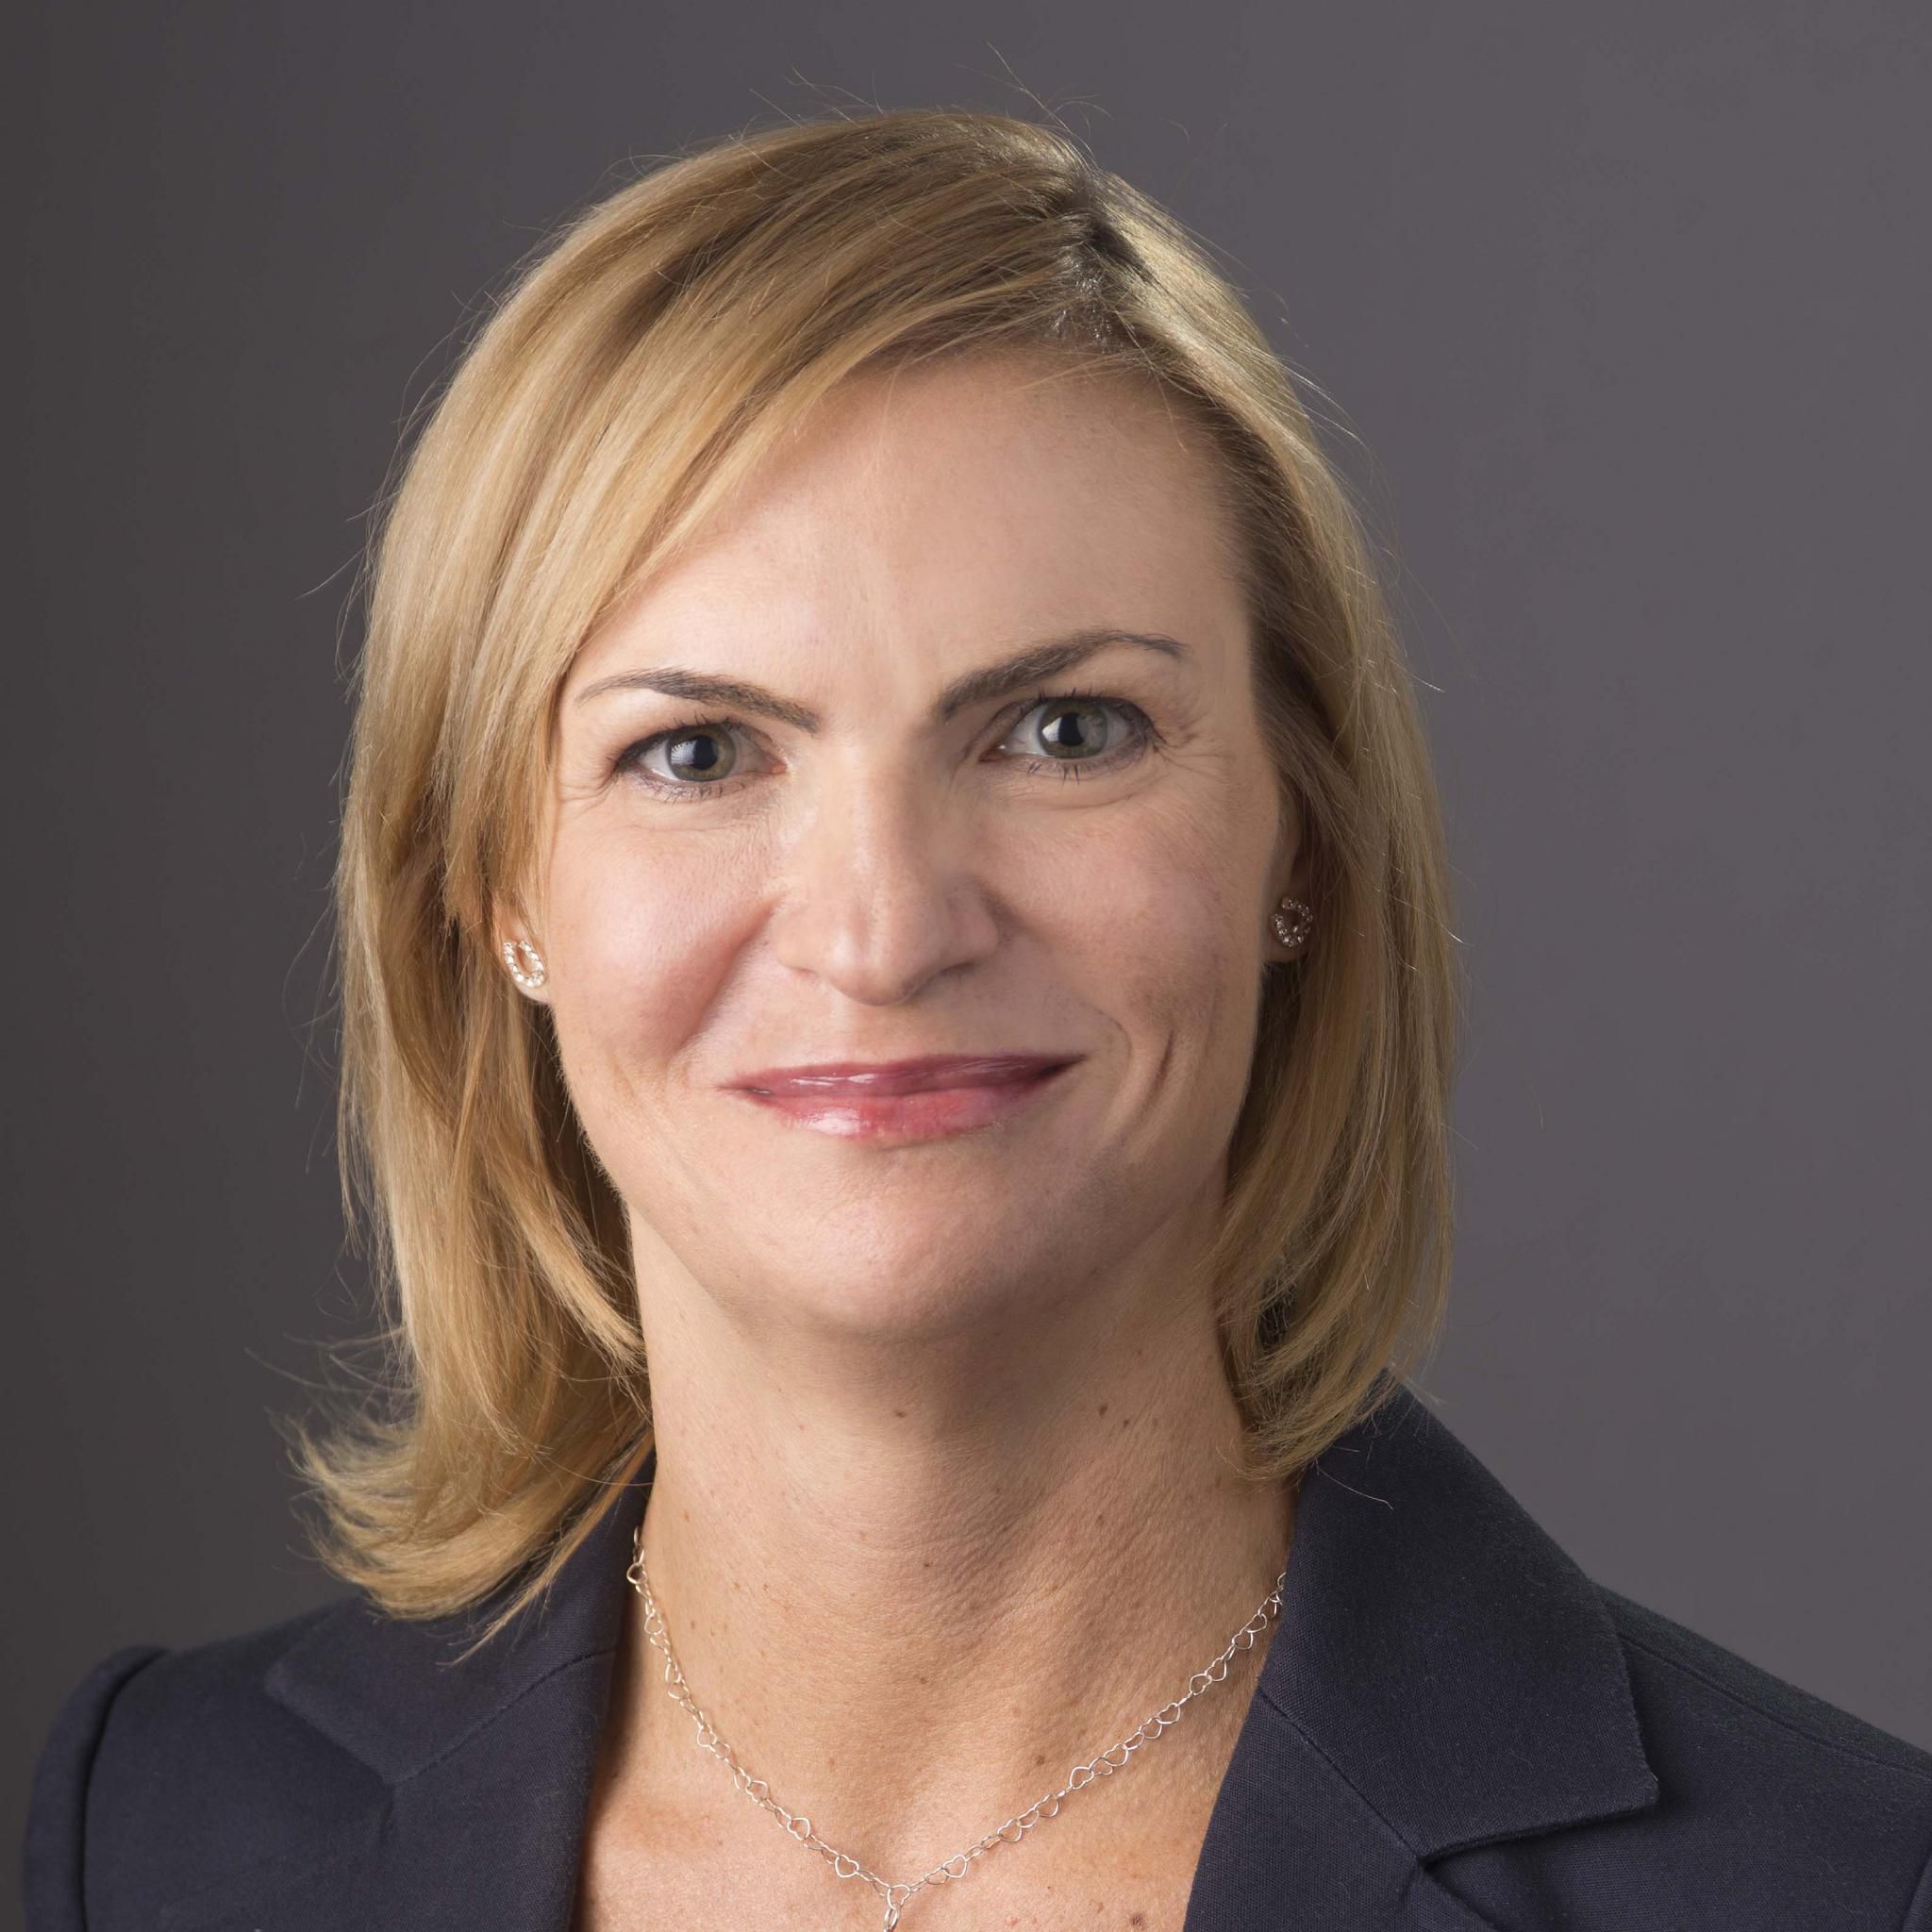 Jenn Ellek, PCM - Digital Marketing